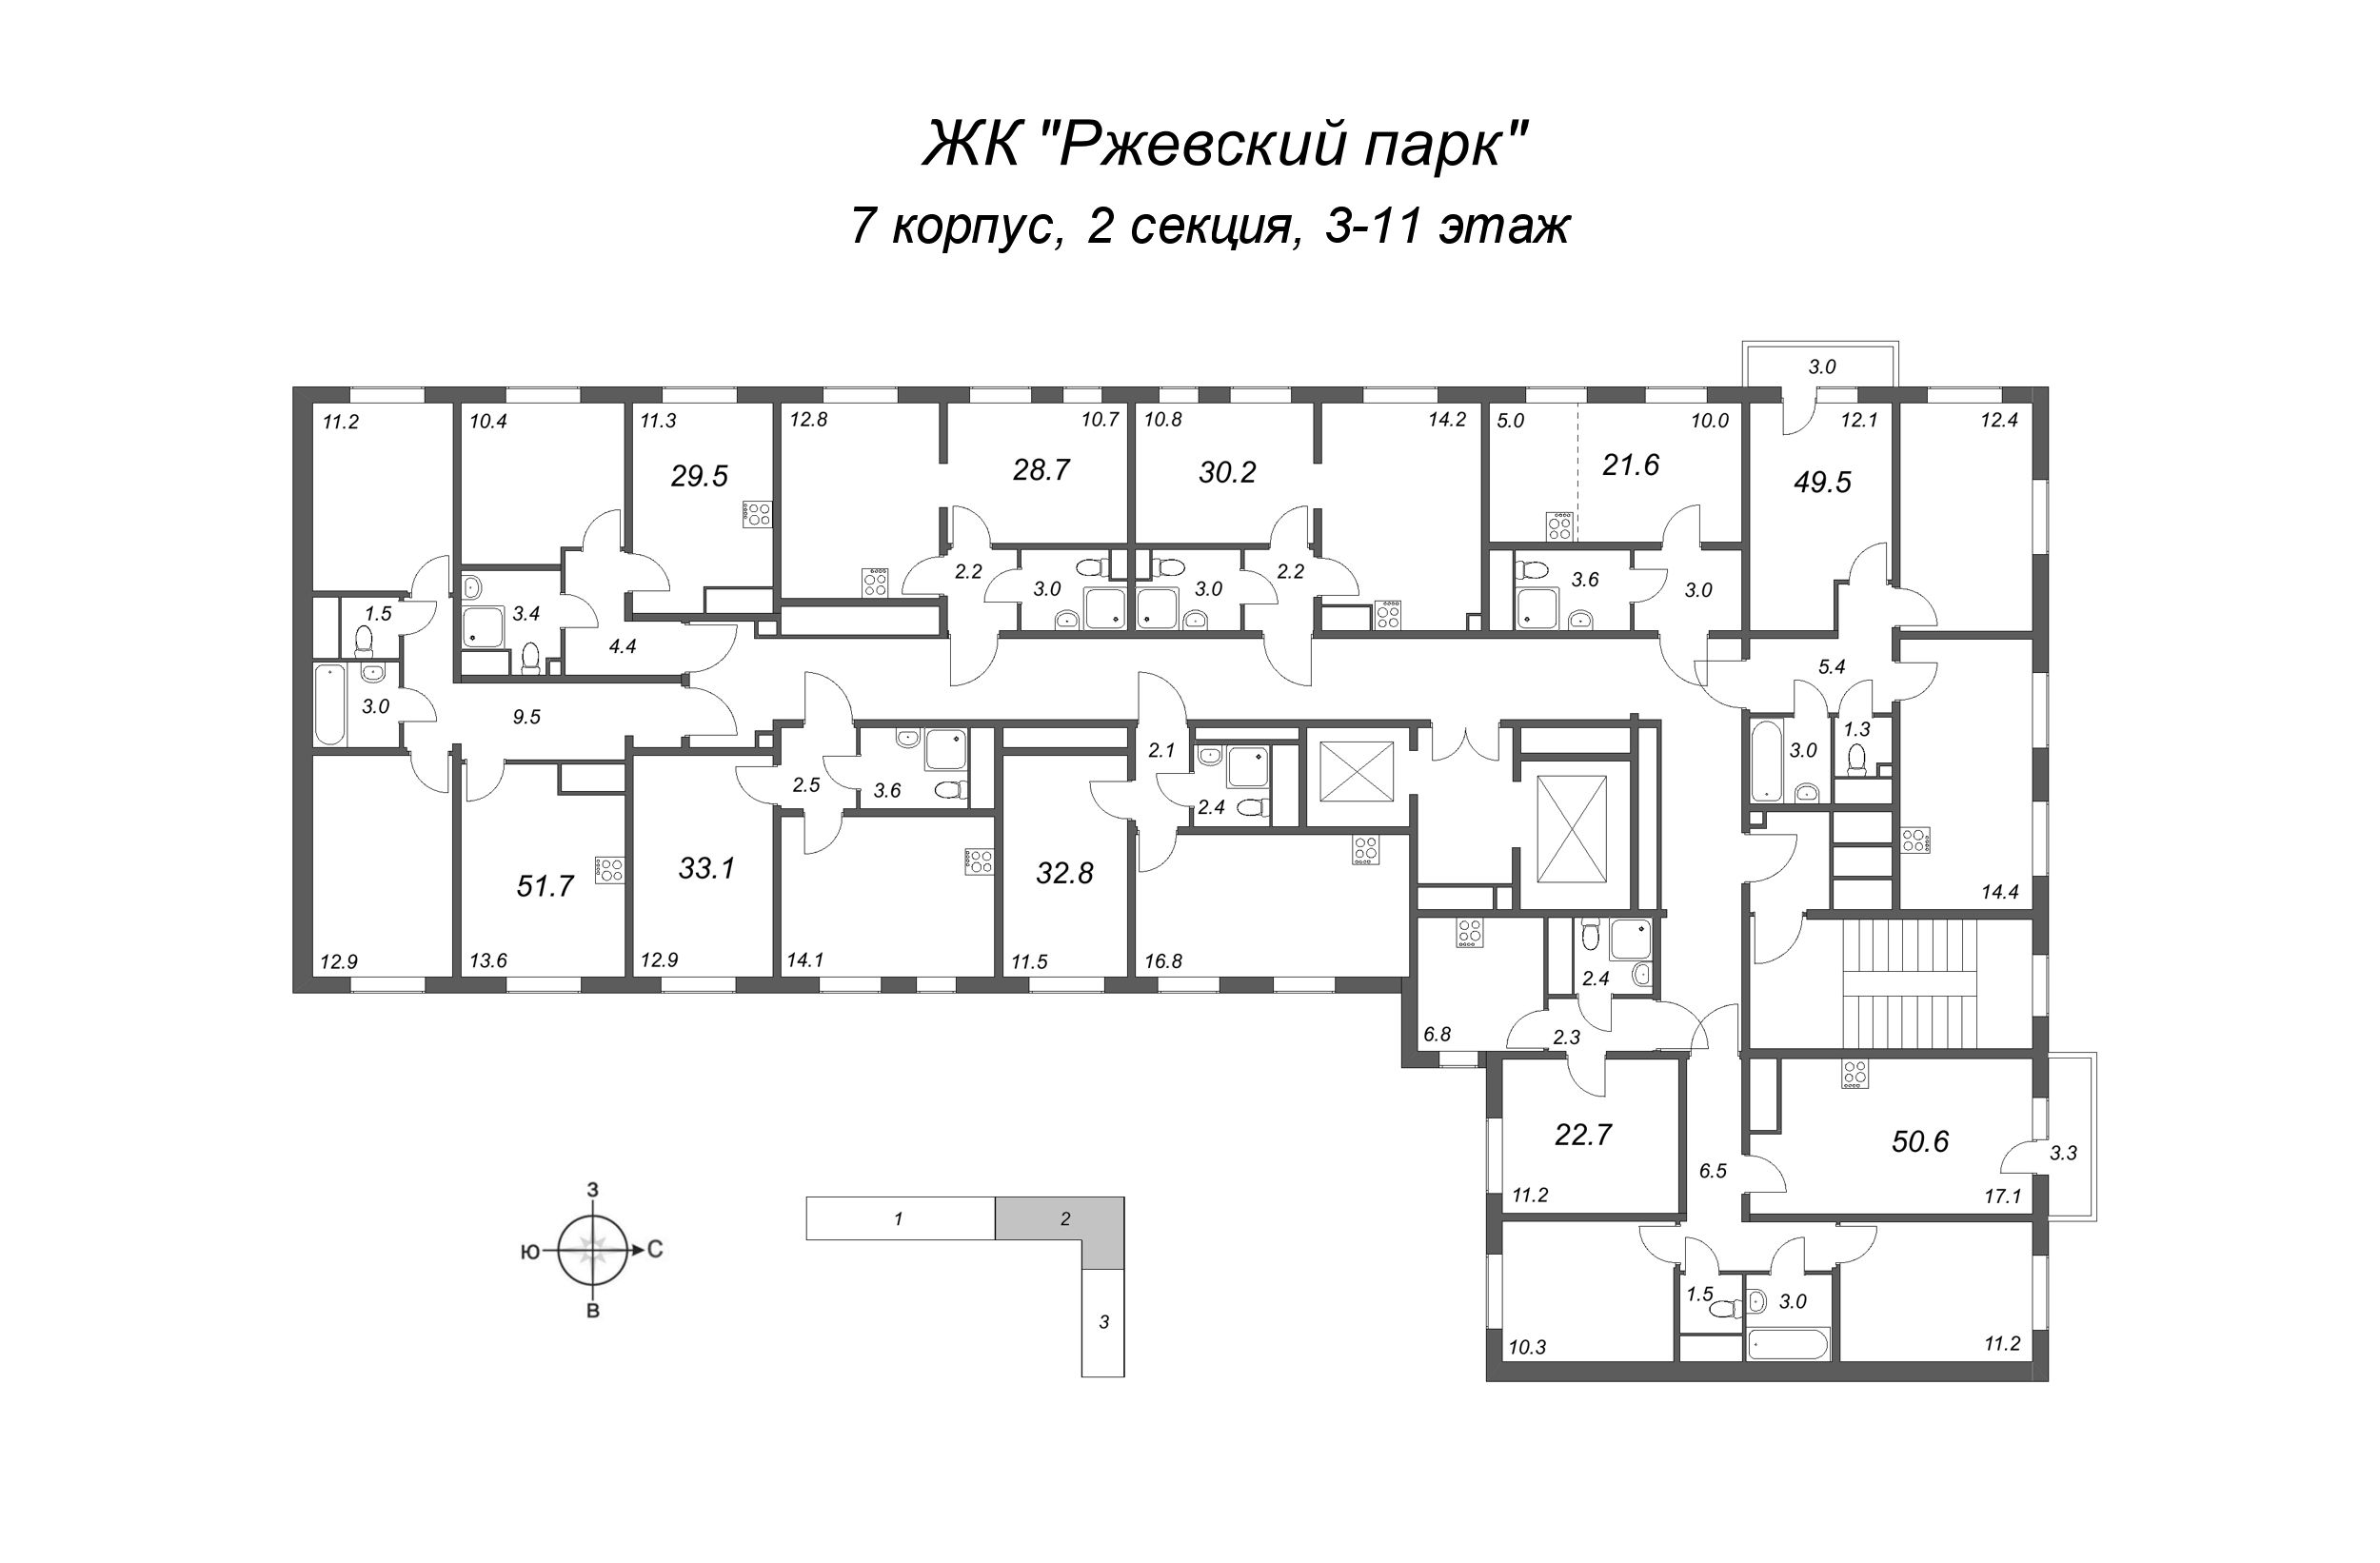 1-комнатная квартира, 28.7 м² в ЖК "ЛСР. Ржевский парк" - планировка этажа